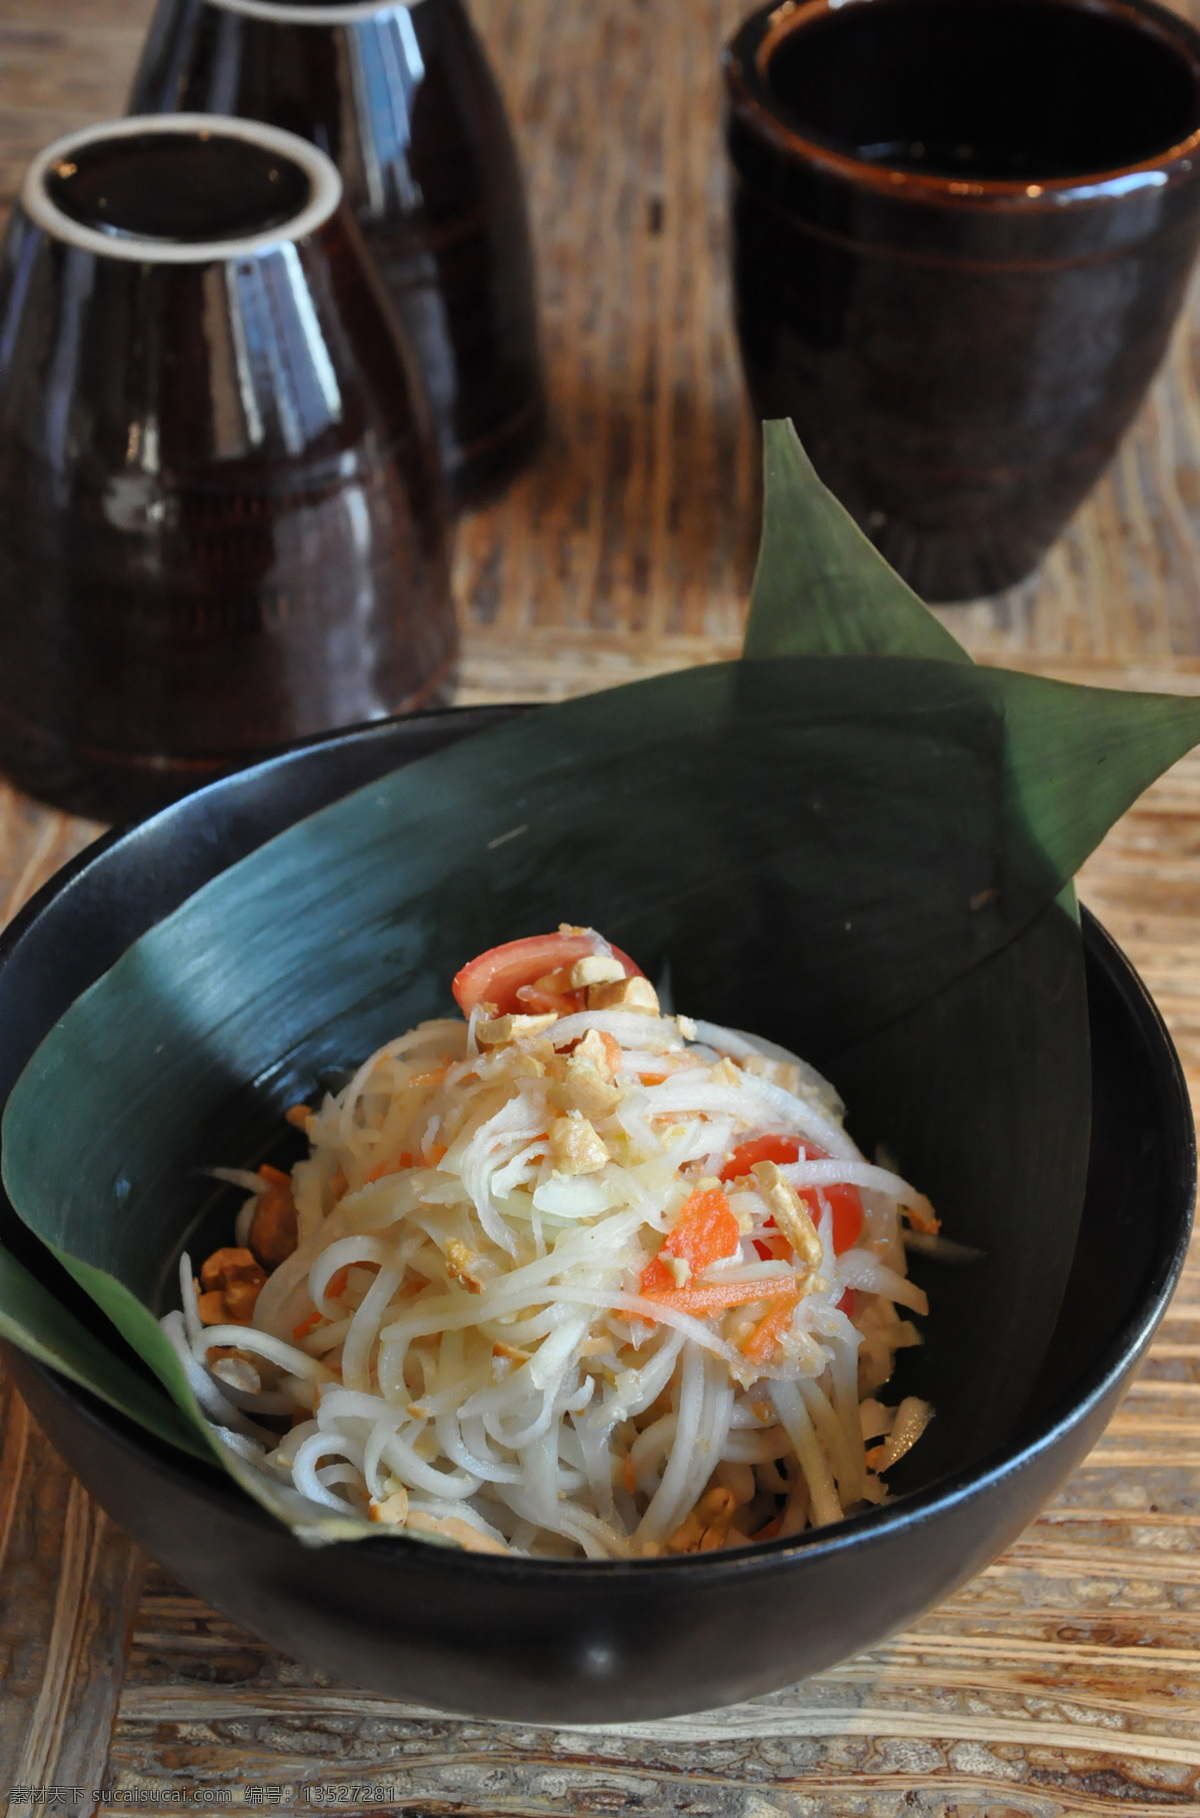 泰国木瓜沙拉 泰国美食 木瓜沙拉 木瓜 沙拉 美食 木桌 餐饮美食